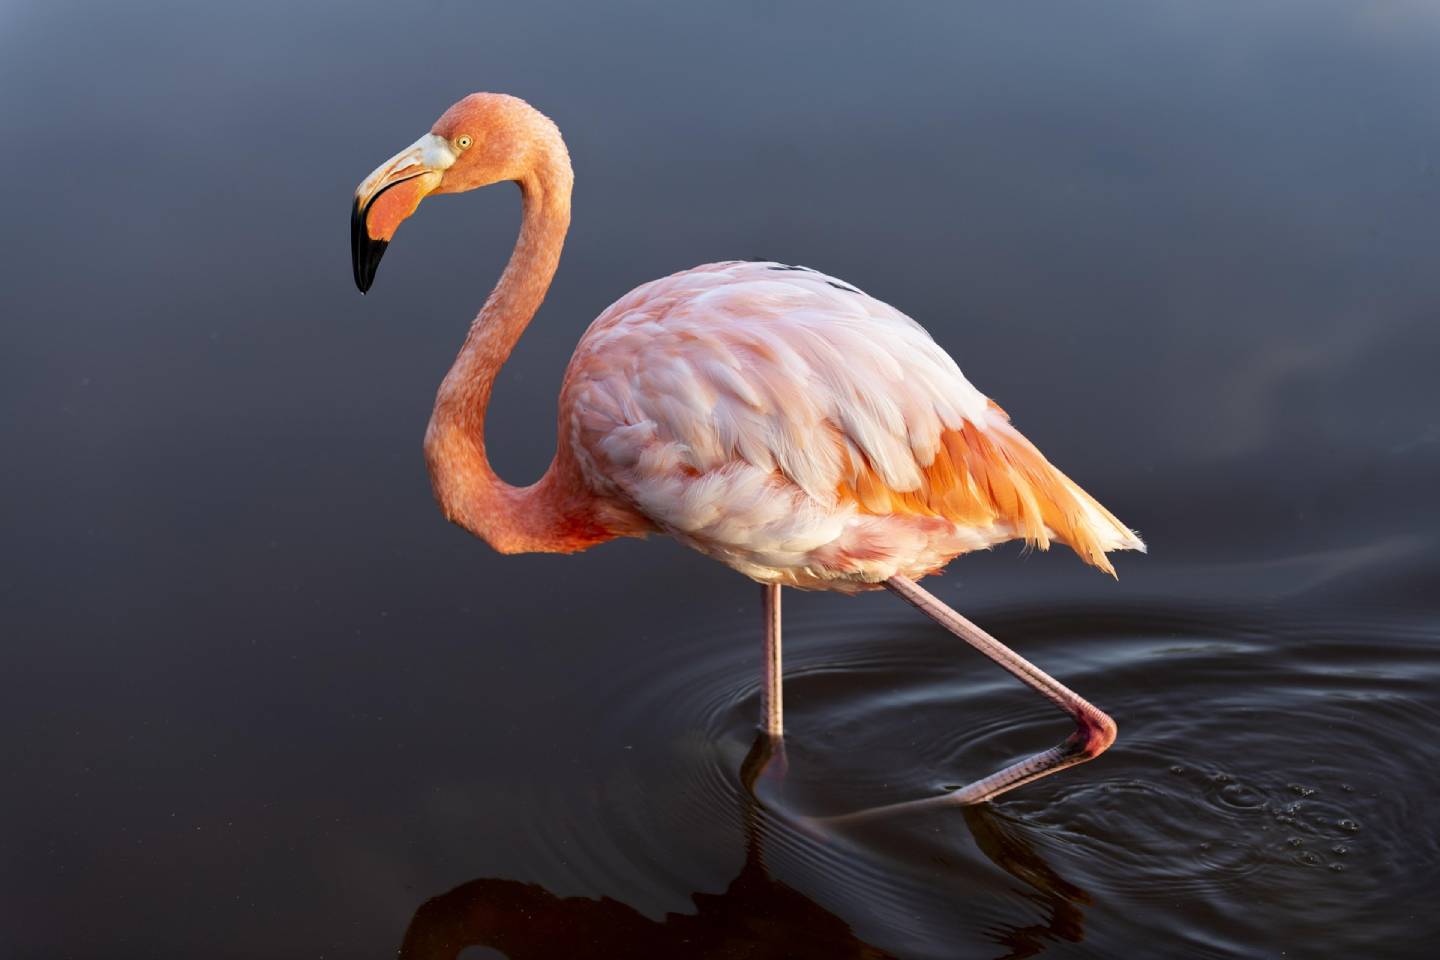 Новости мира / Интересные новости / На озеро Караколь раньше положенного срока вернулись фламинго